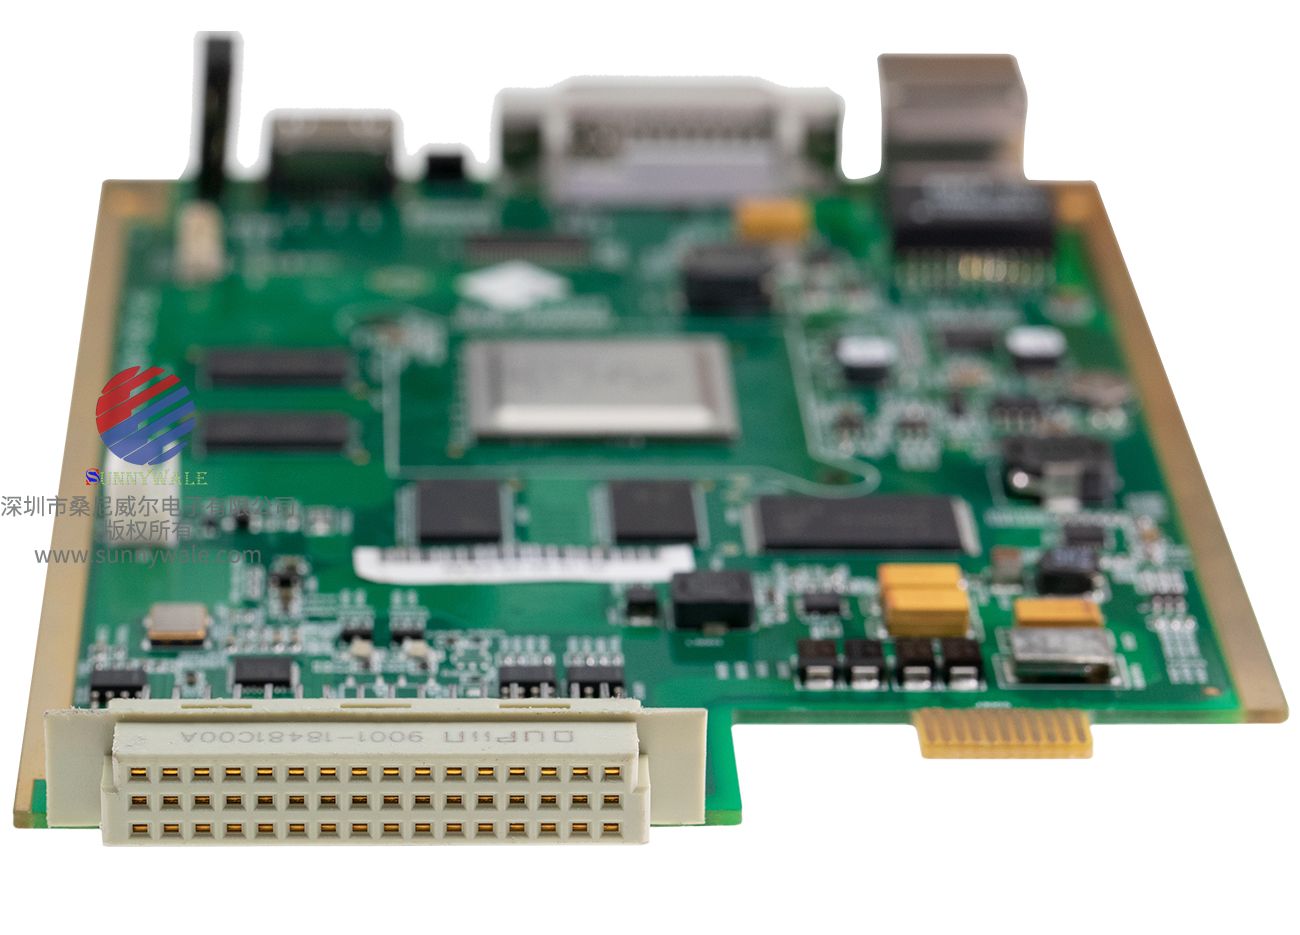 美国Infinova监控视频解码板，安防视频解码板，海思HI3531RFCV100处理器，V2524-H1H， H.264解码编码器，5路高清视频实时编码解码处理，DP-2305-HDVDMAIN-REV.B，监控主板，视频解压版，监控编码模组，DVI HDMI输出视频解码板